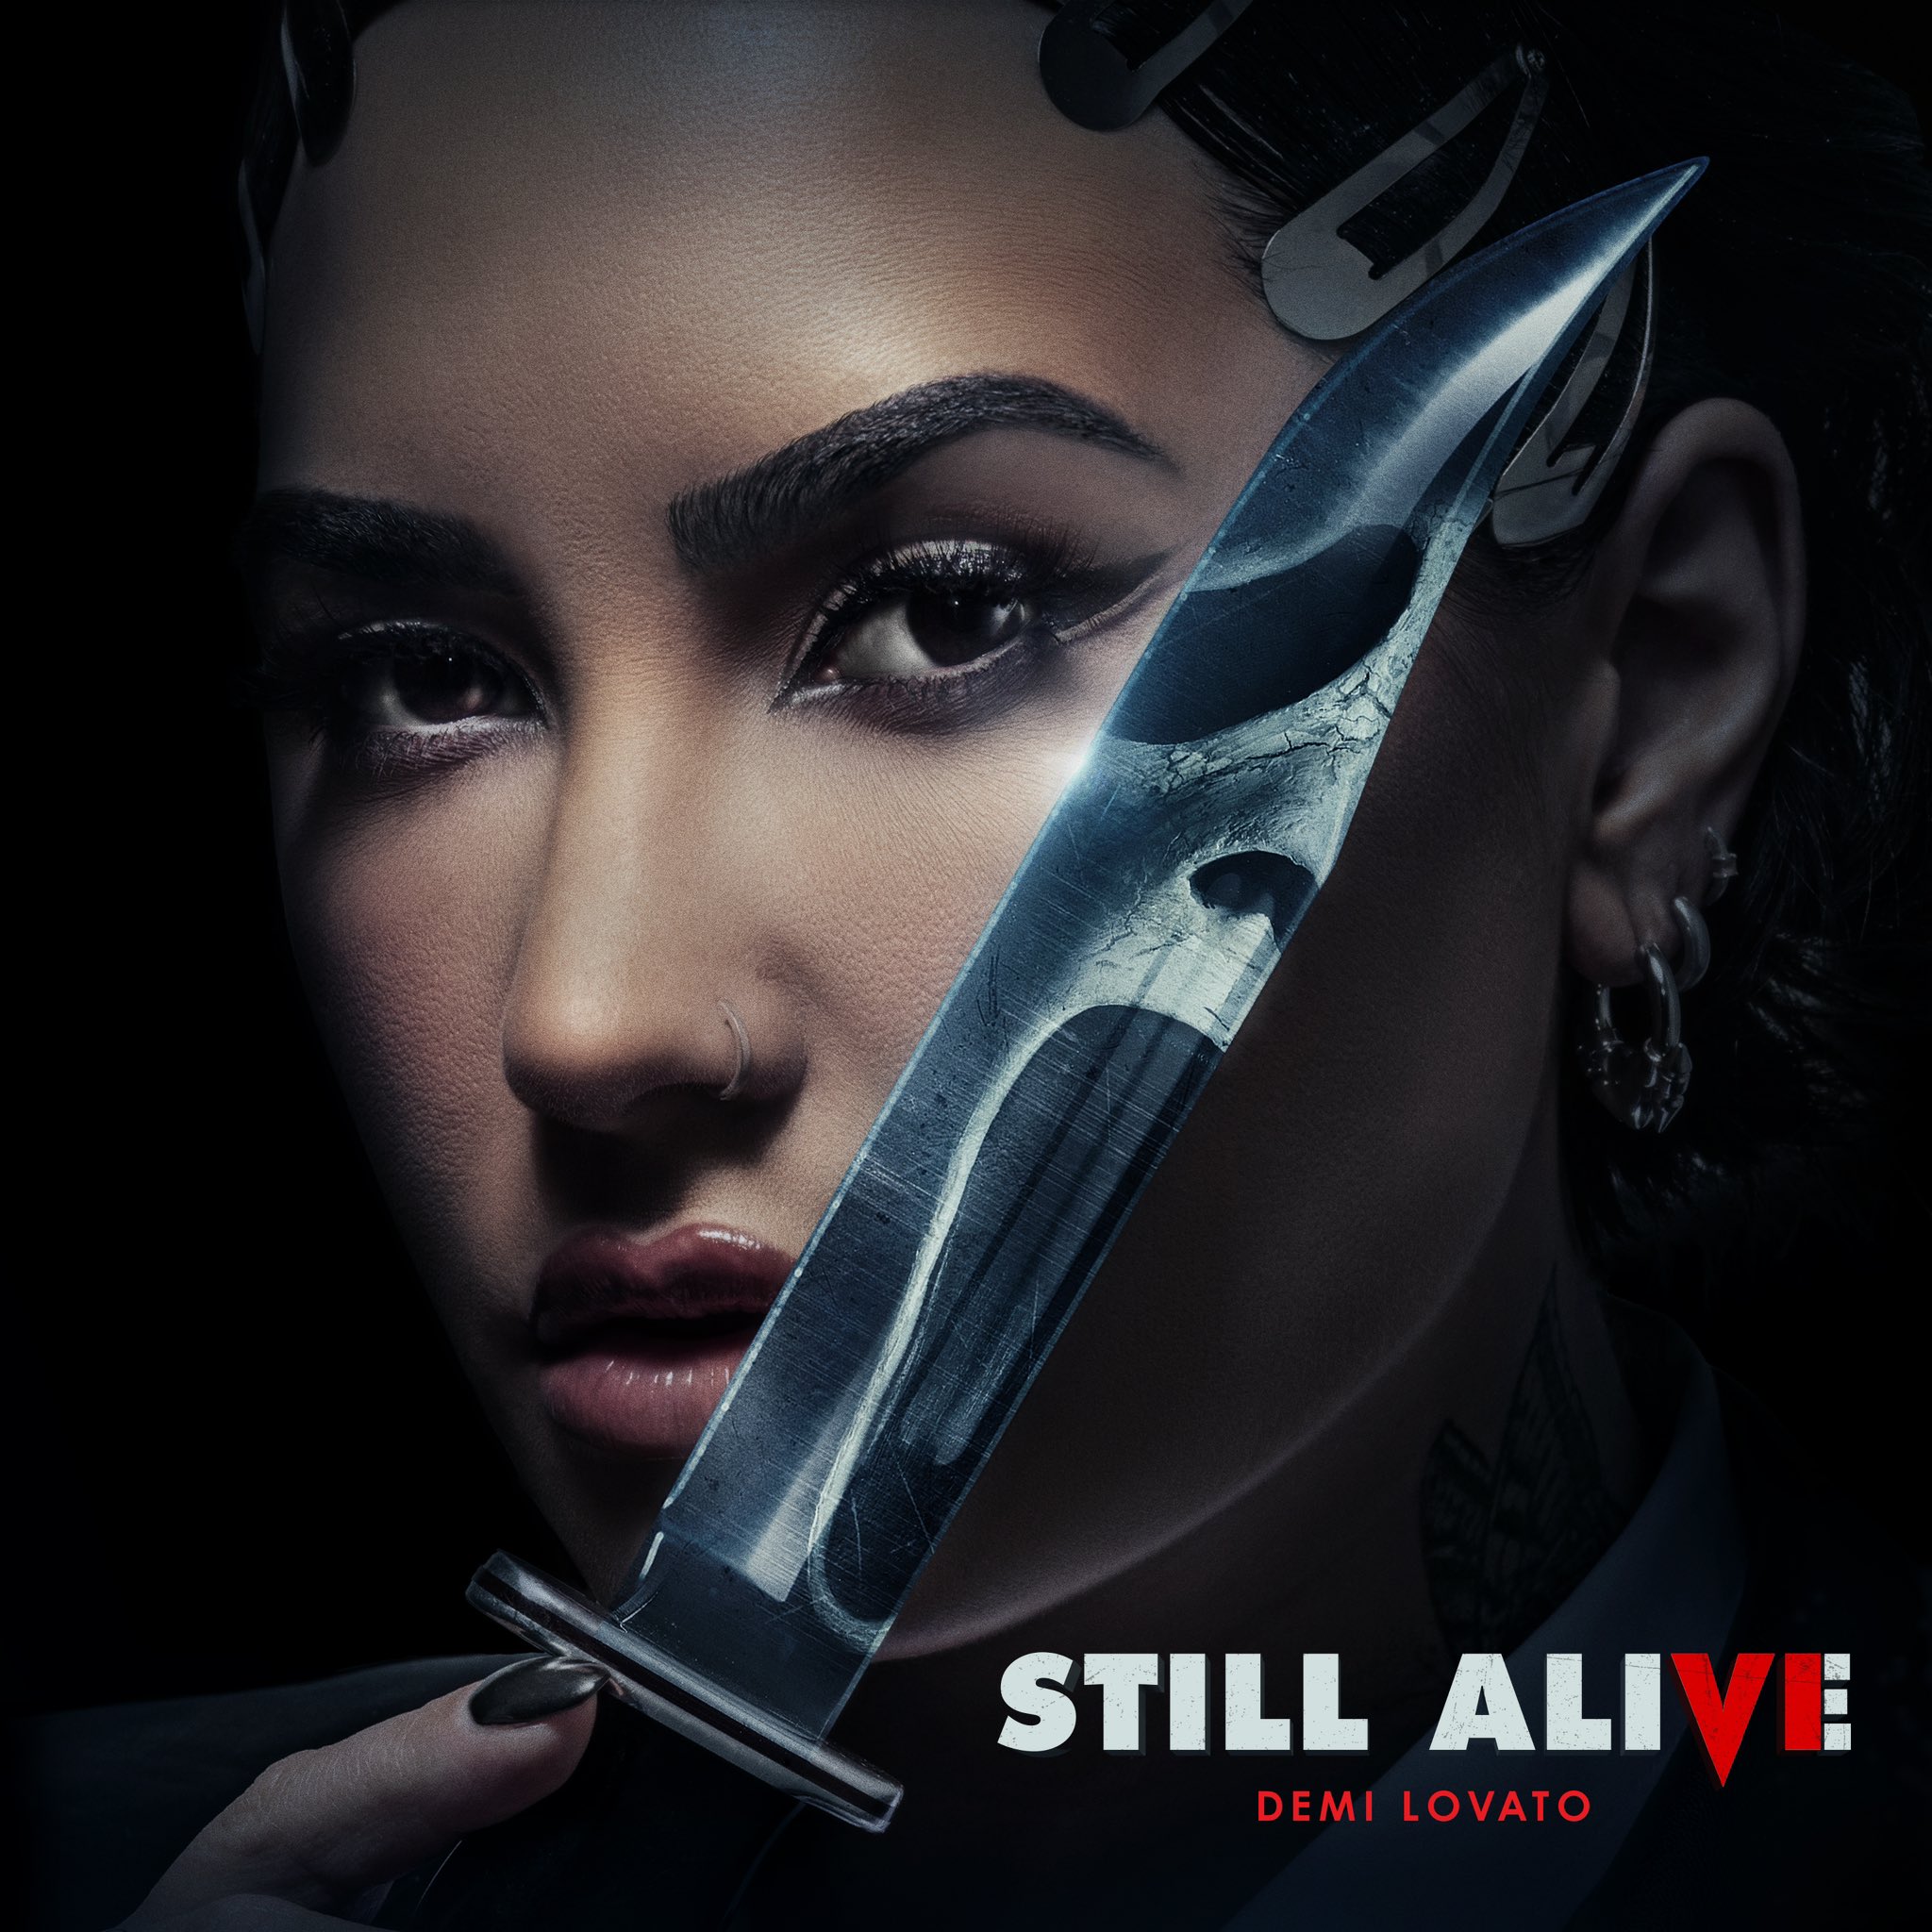 Luister naar Demi Lovato's Still Alive voor Scream 6